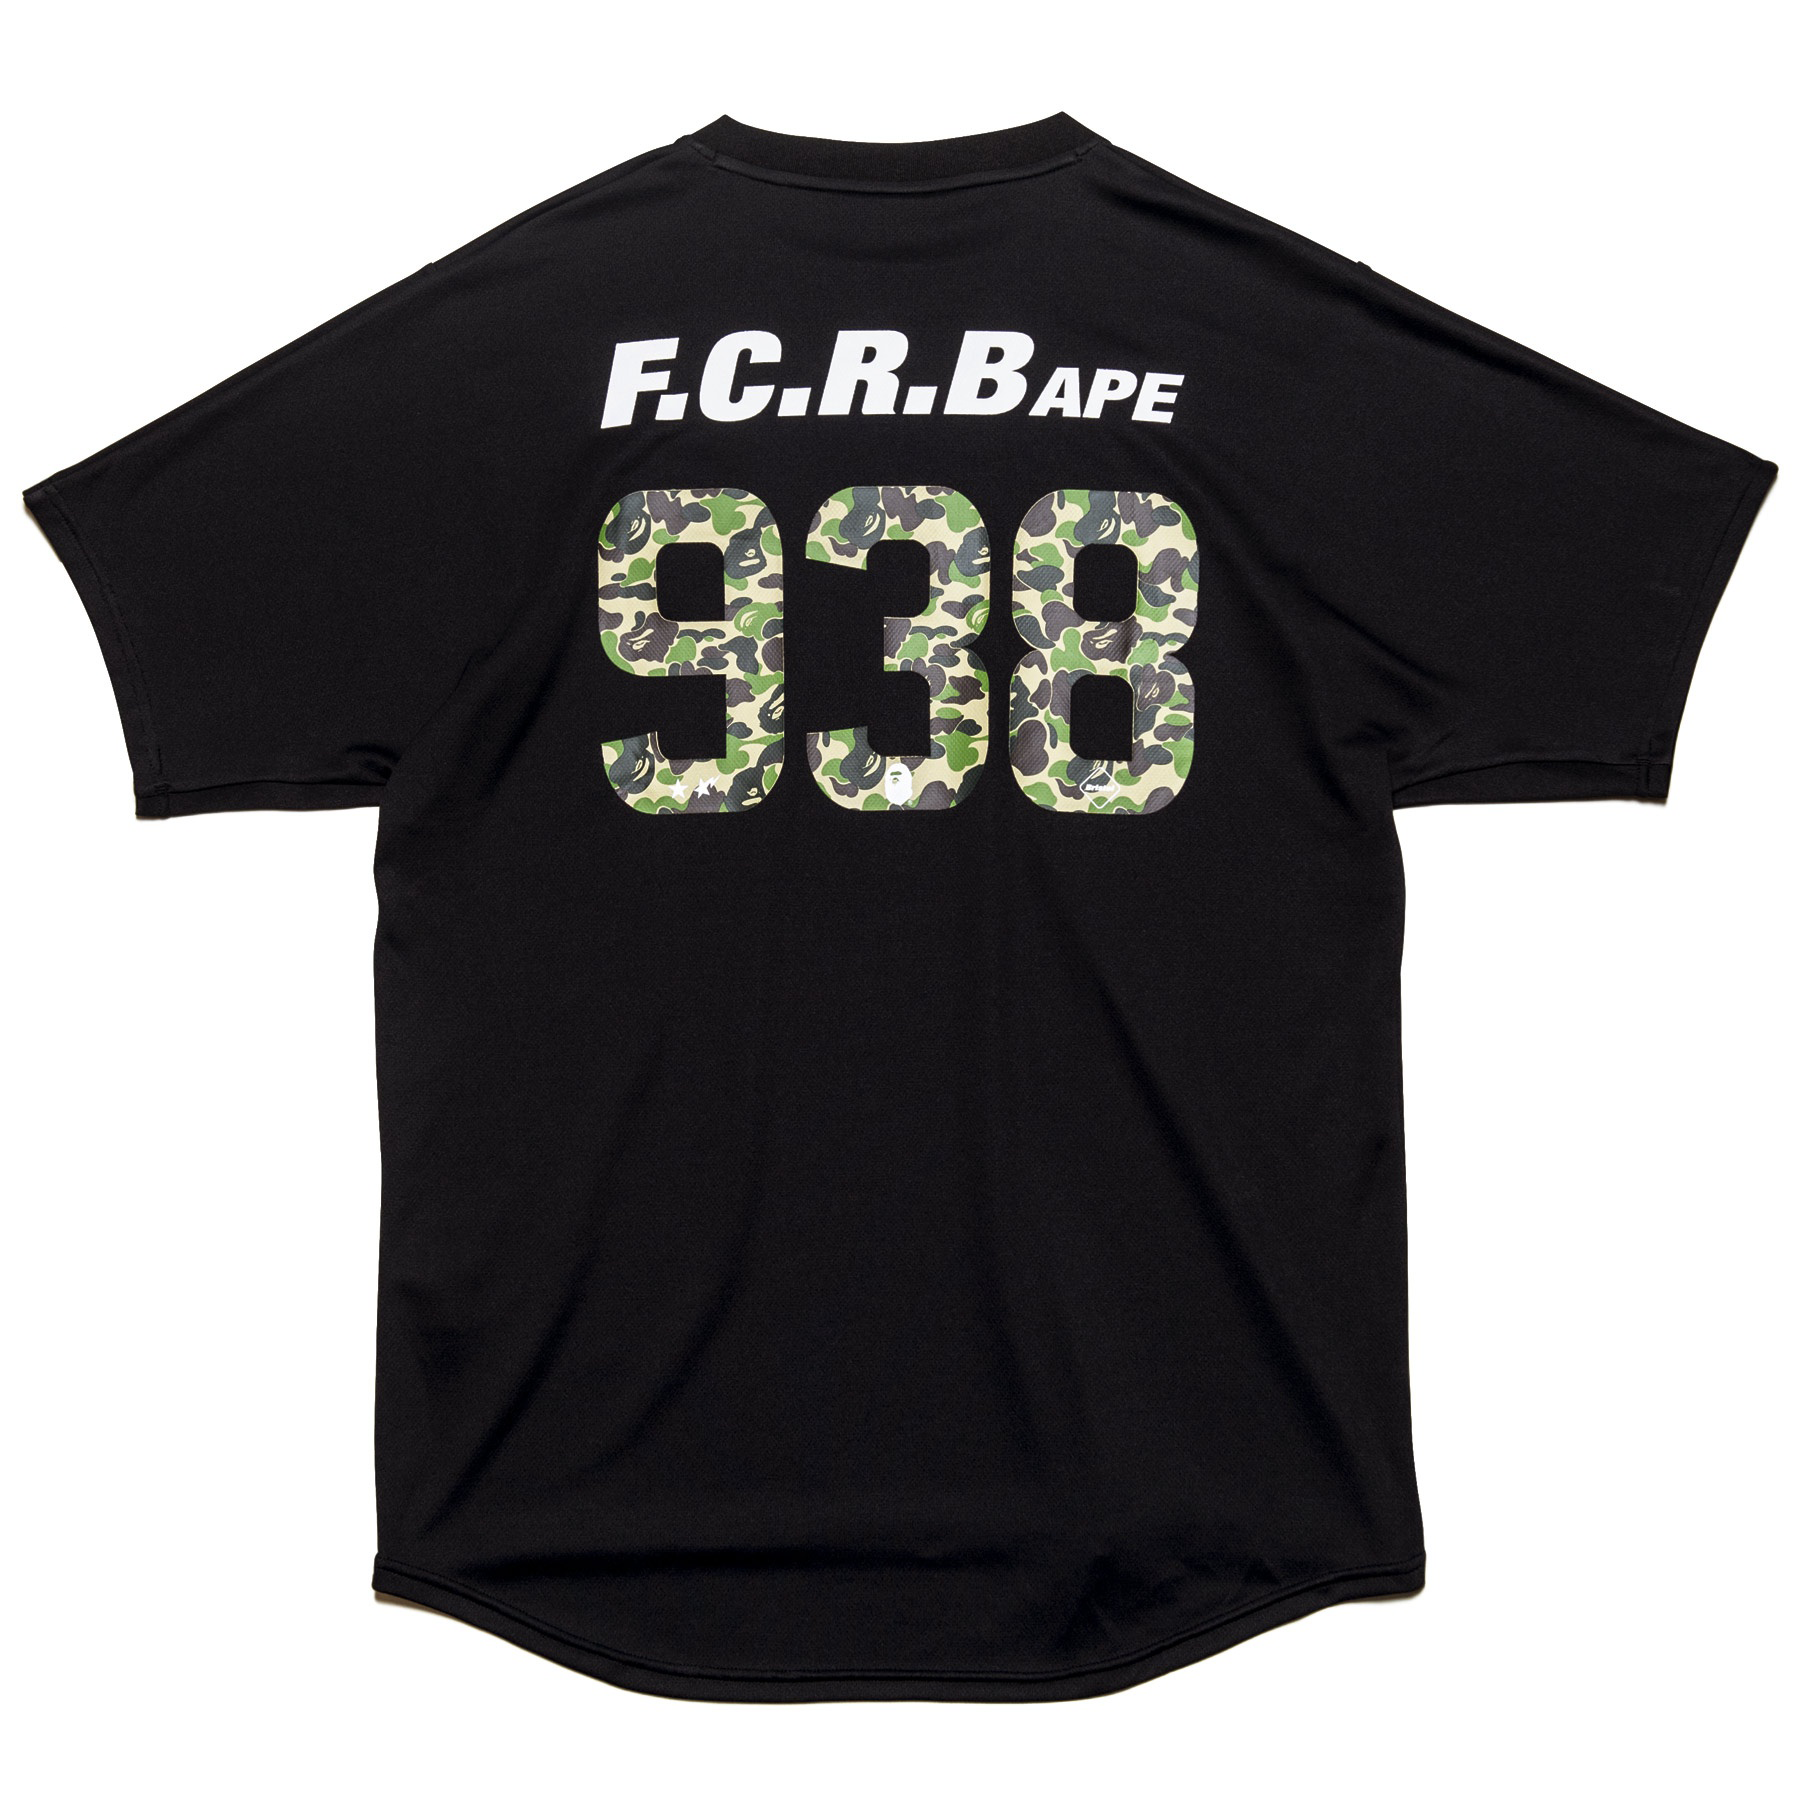 BAPE x F.C.R.B. 938 Team Tee Black